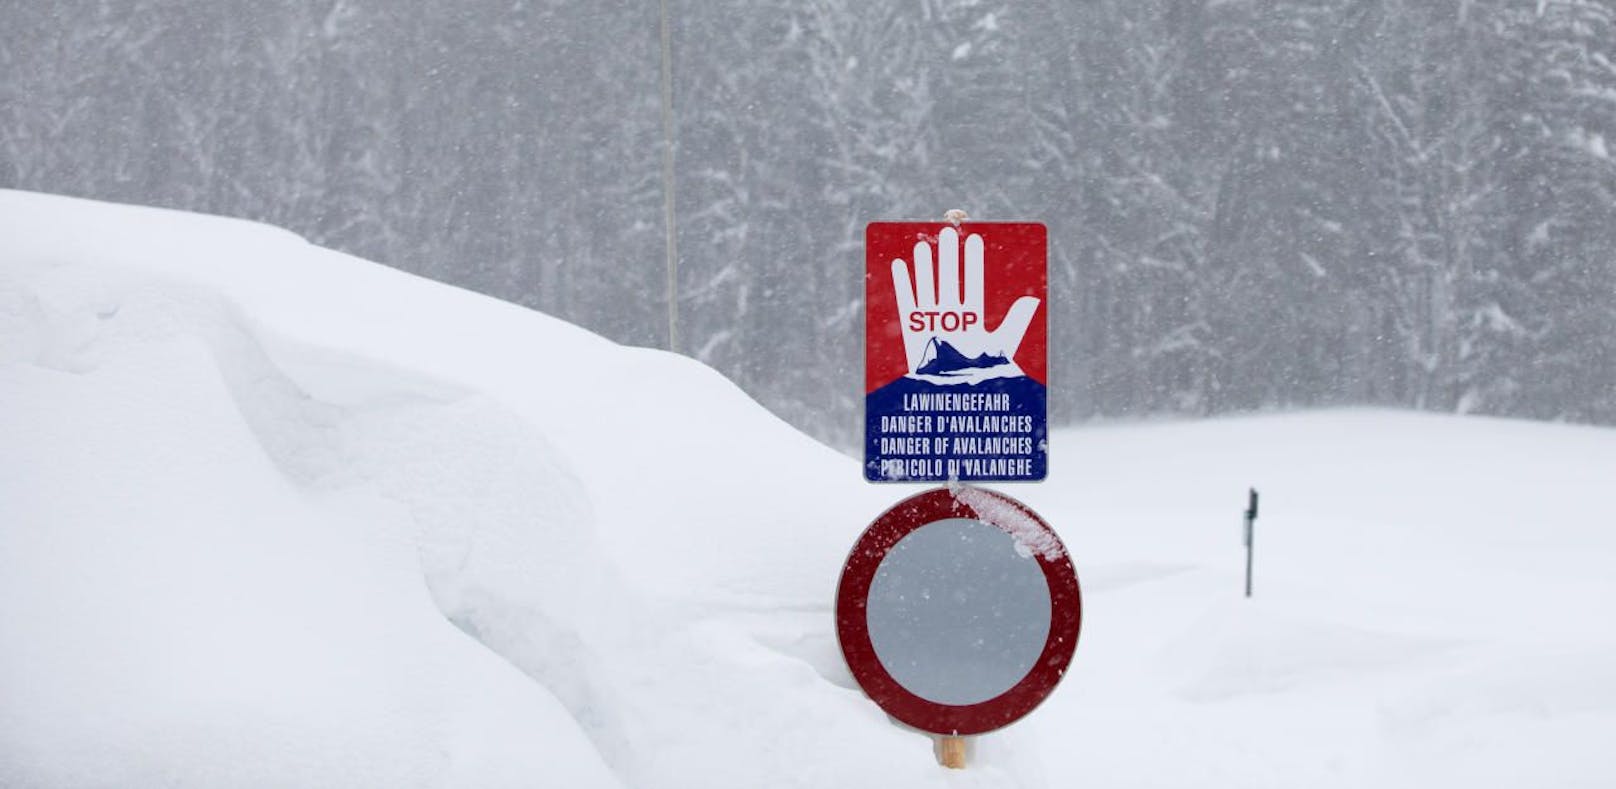 Vom Schnee verschüttet: Vermisste Tourengeher tot